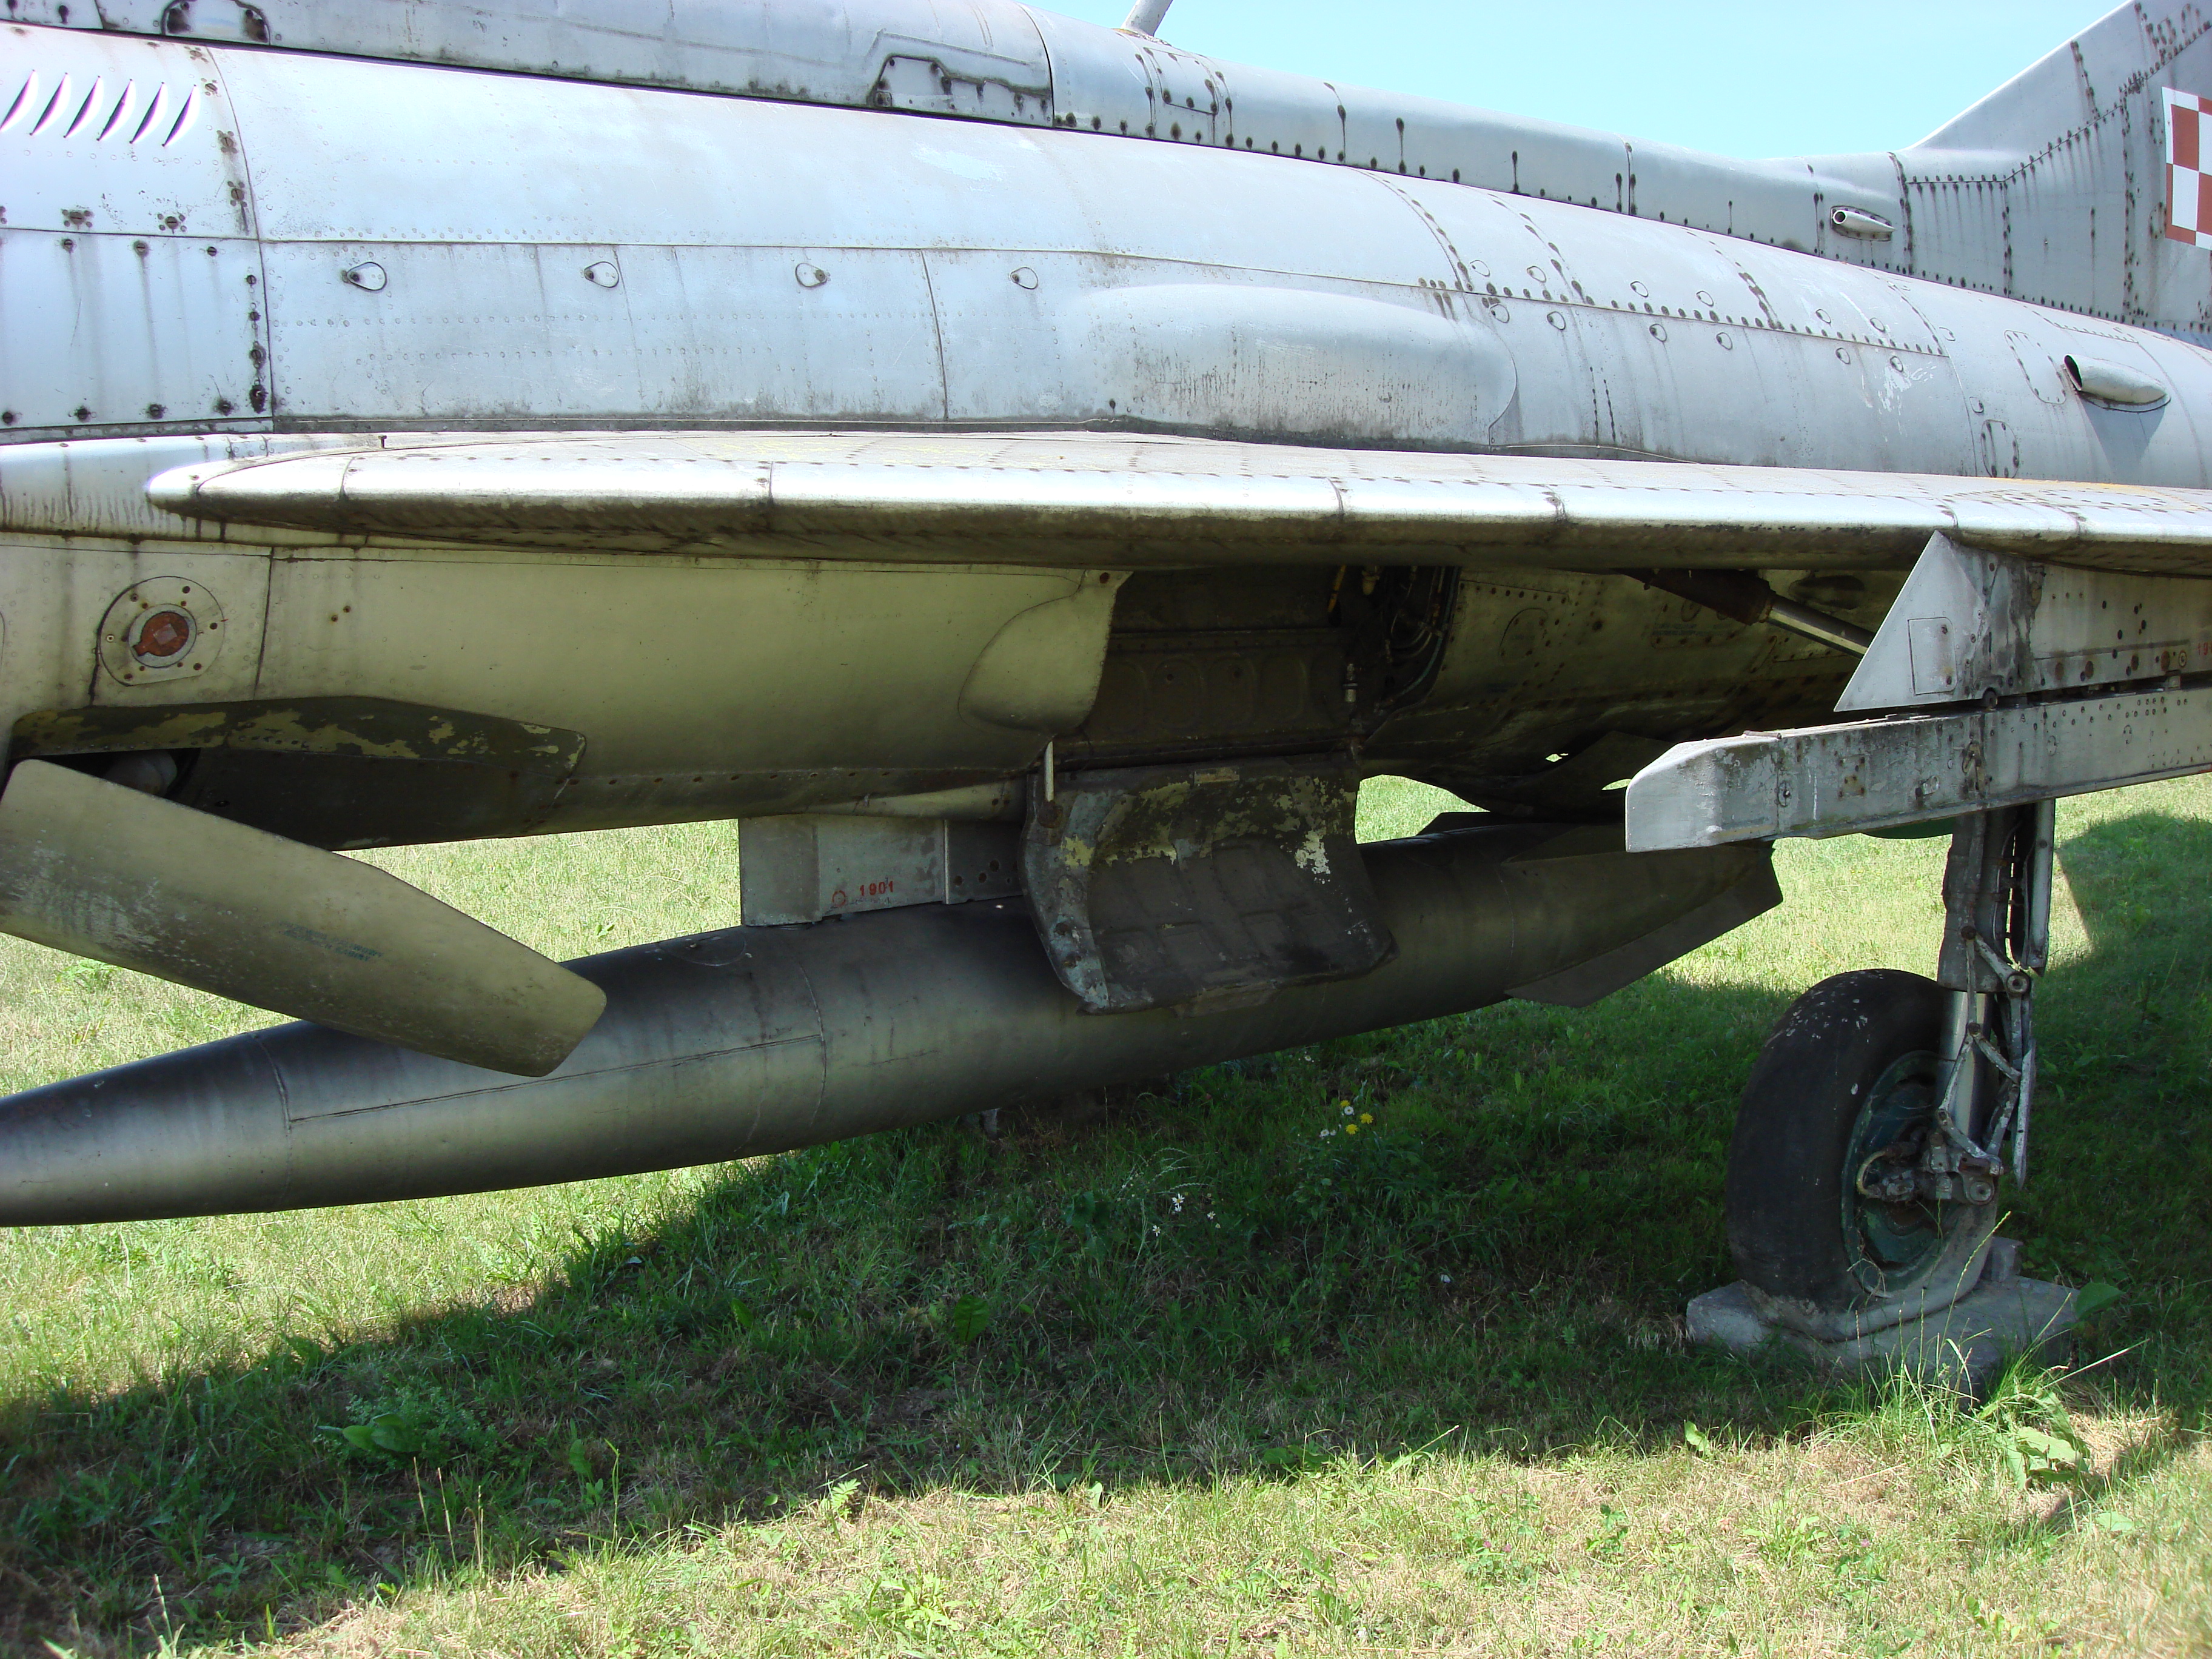 Podwozie główne MiG-21 PF nb 1901 Czyżyny 2006 rok. Zdjęcie Karol Placha Hetman